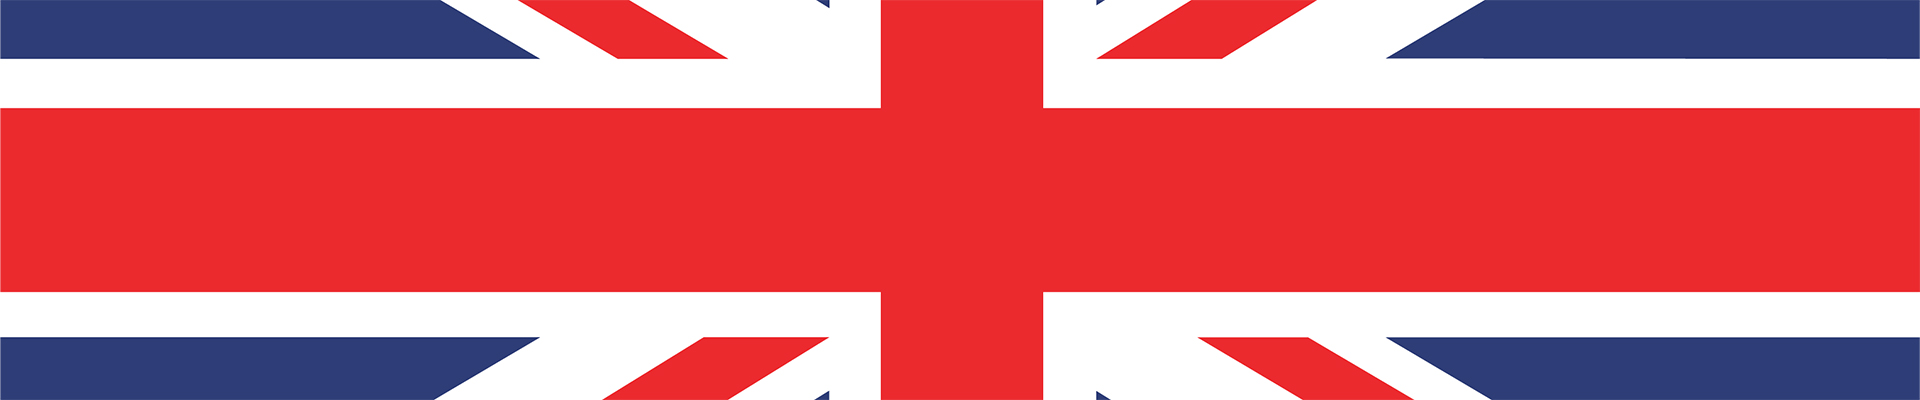 Alcaraz vs Tsitsipas en direct – drapeau britannique